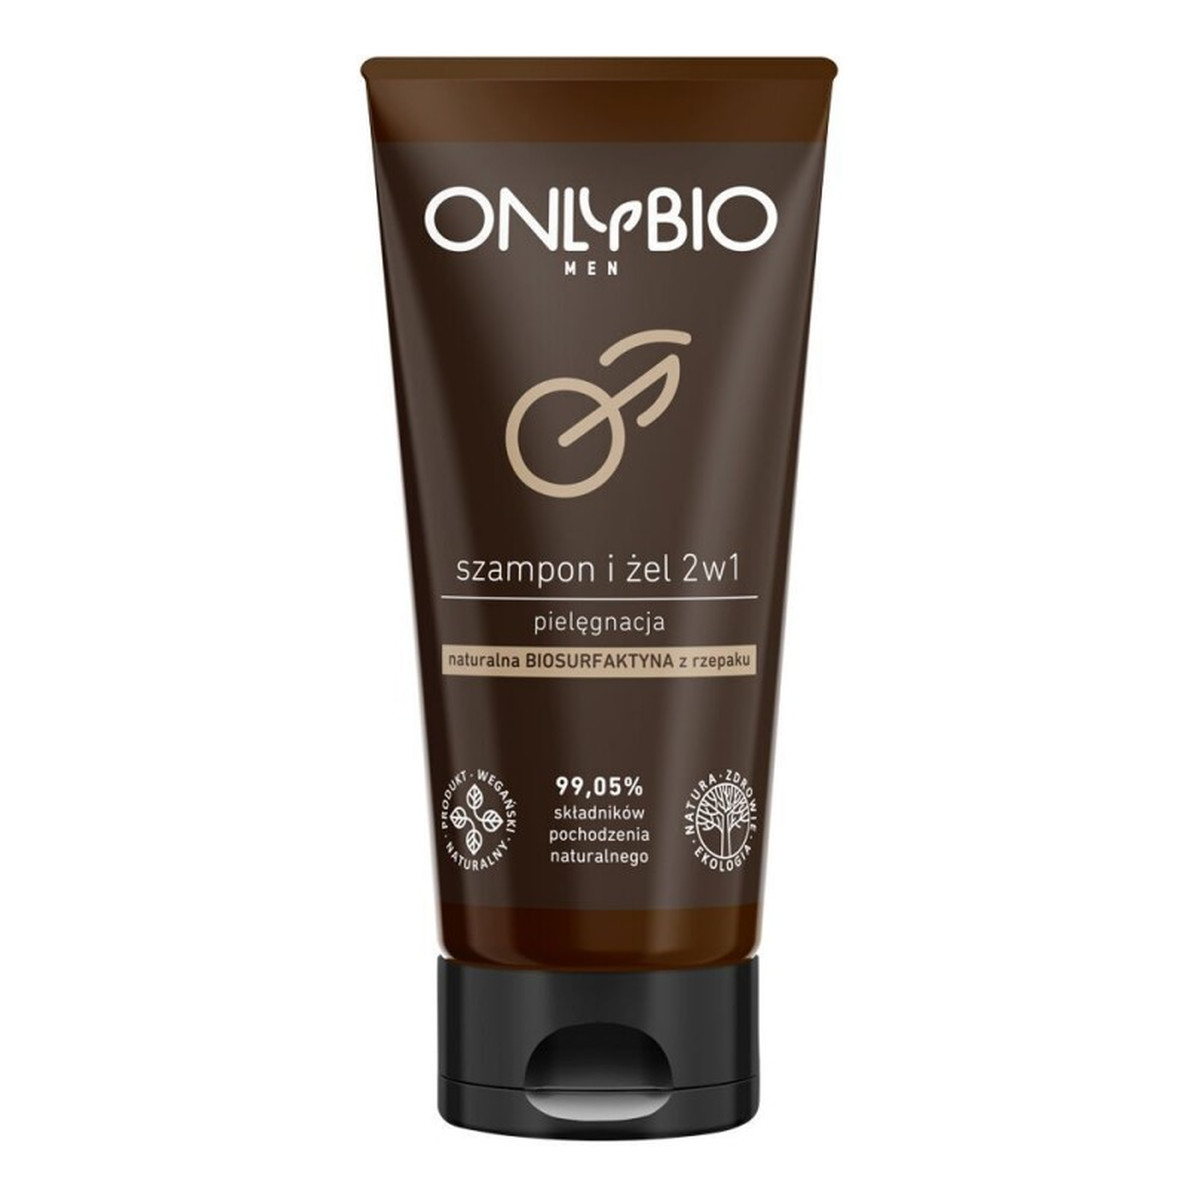 OnlyBio Men pielęgnacyjny szampon i żel 2w1 z olejem z sezamu 200ml